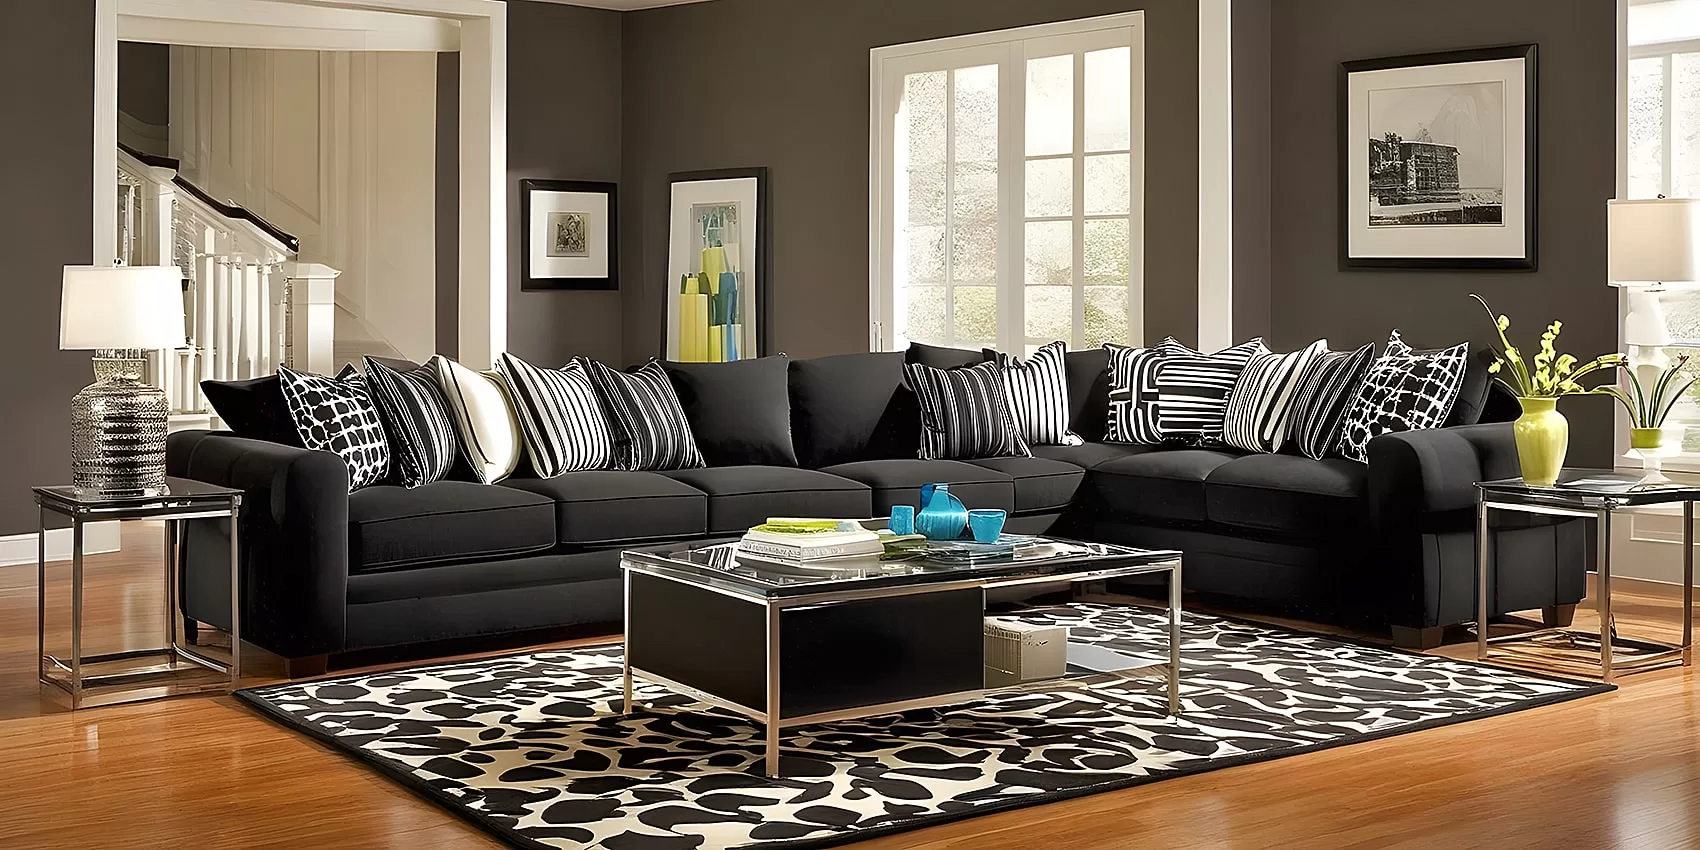 Black Couch Living Room | Black Couch Living Room Ideas | Black Sofa Living Room Ideas